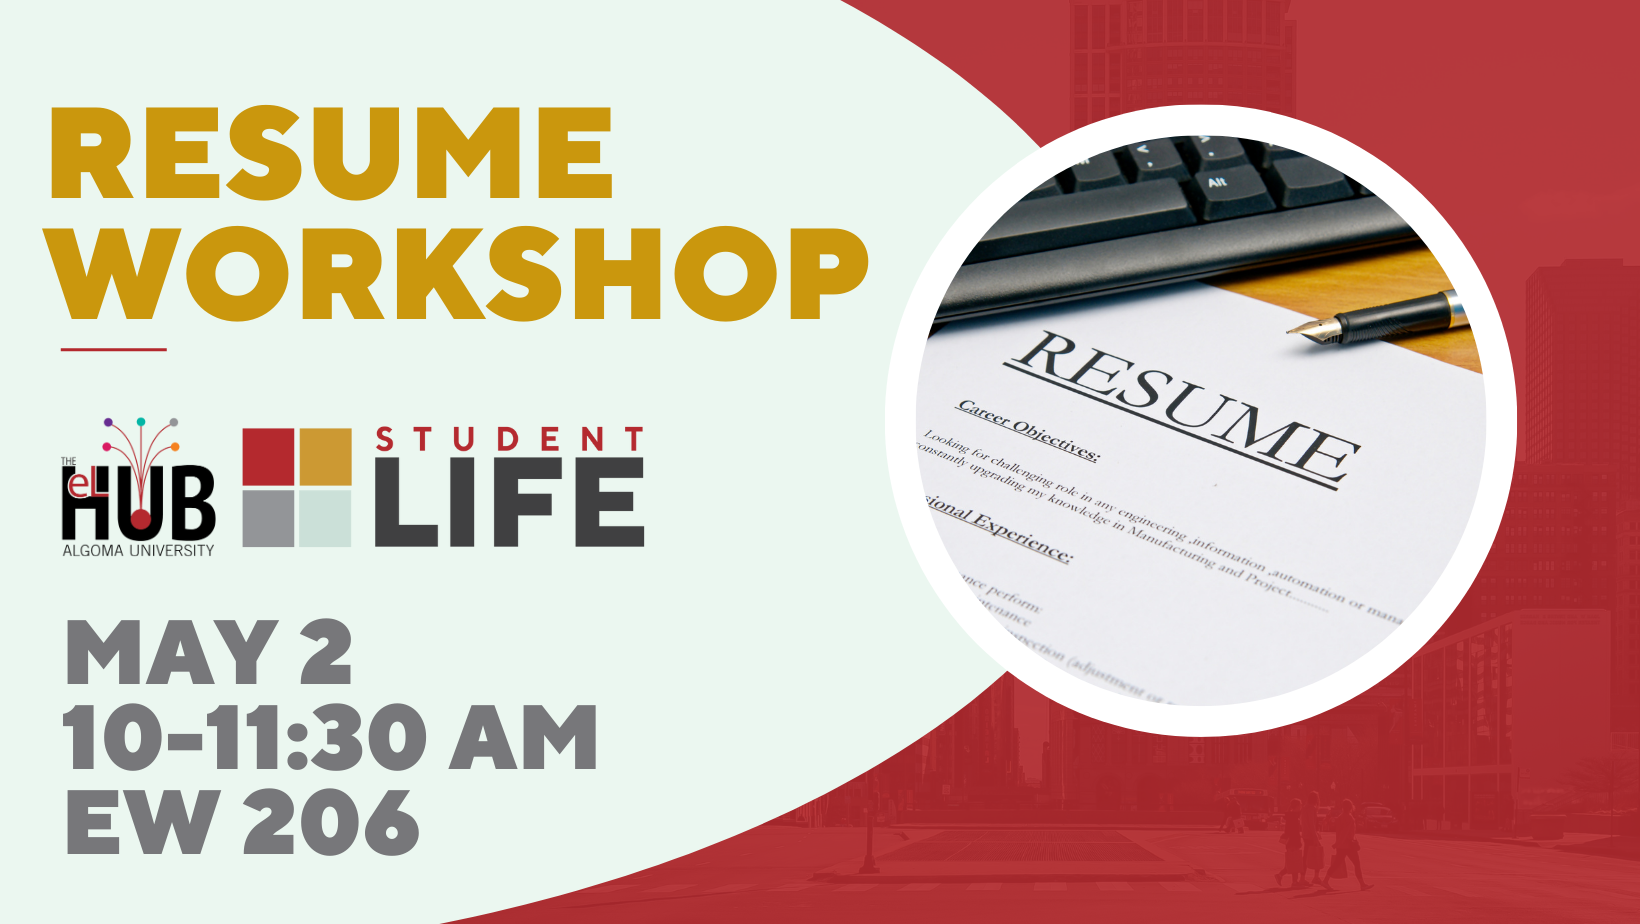 Resume Workshop Event